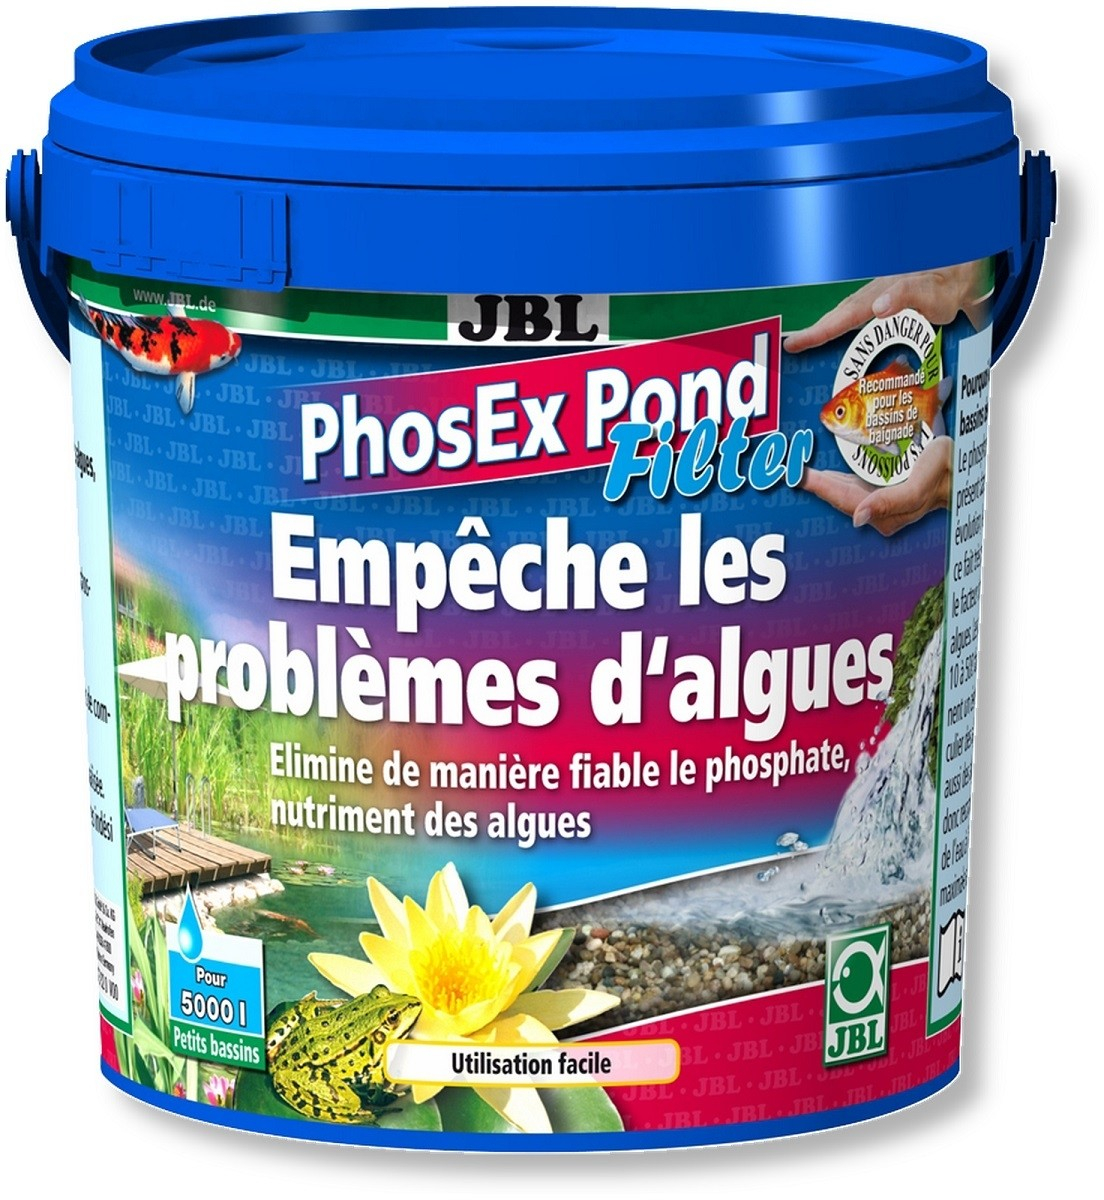 PhosEx Pond Filter Rimovente di fosfati per i filtri da laghetto